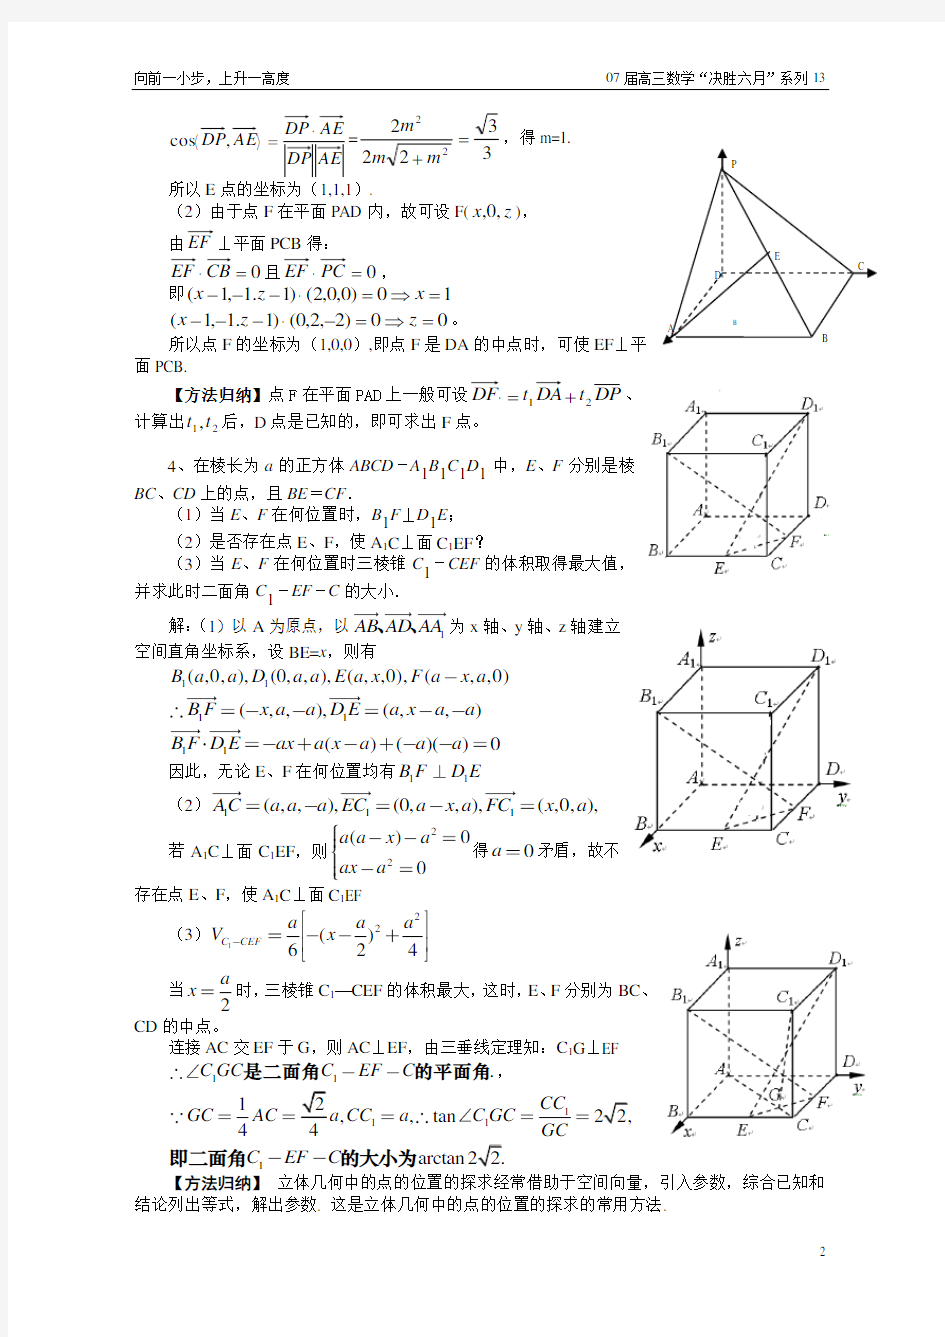 立体几何中探索性问题的向量解法